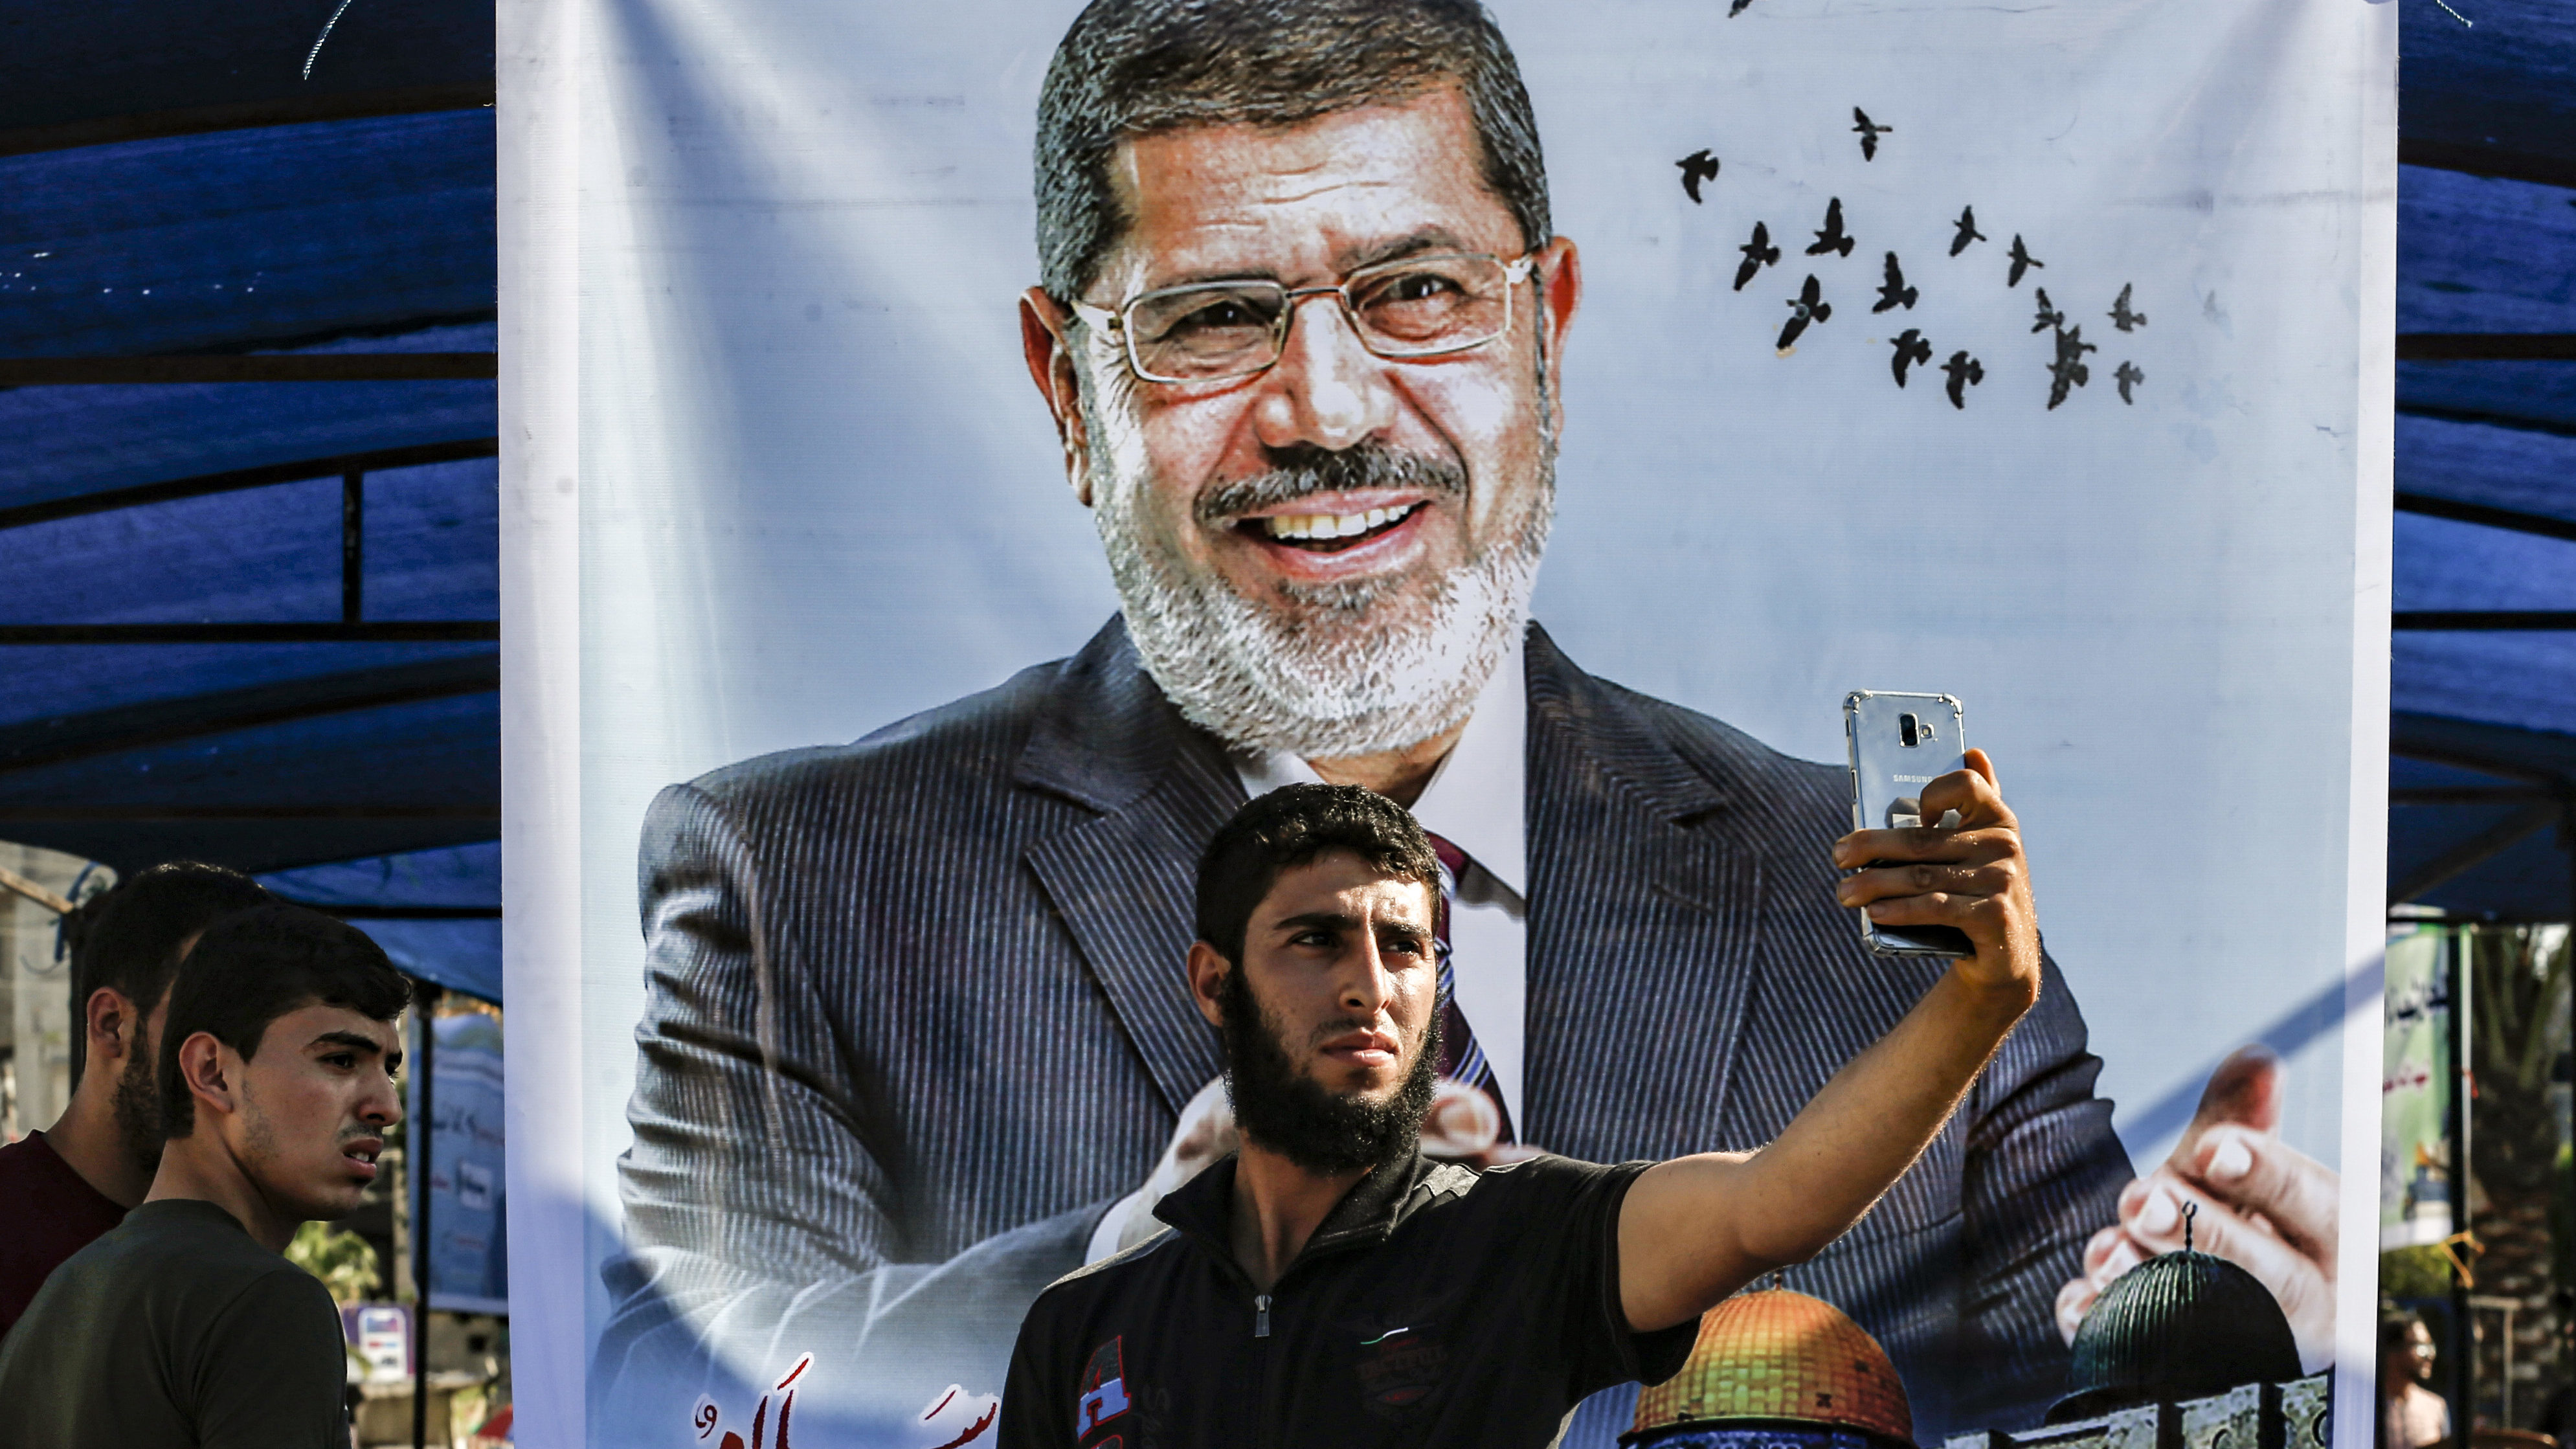 With Morsi’s Death, Muslim Brotherhood’s Future in Limbo